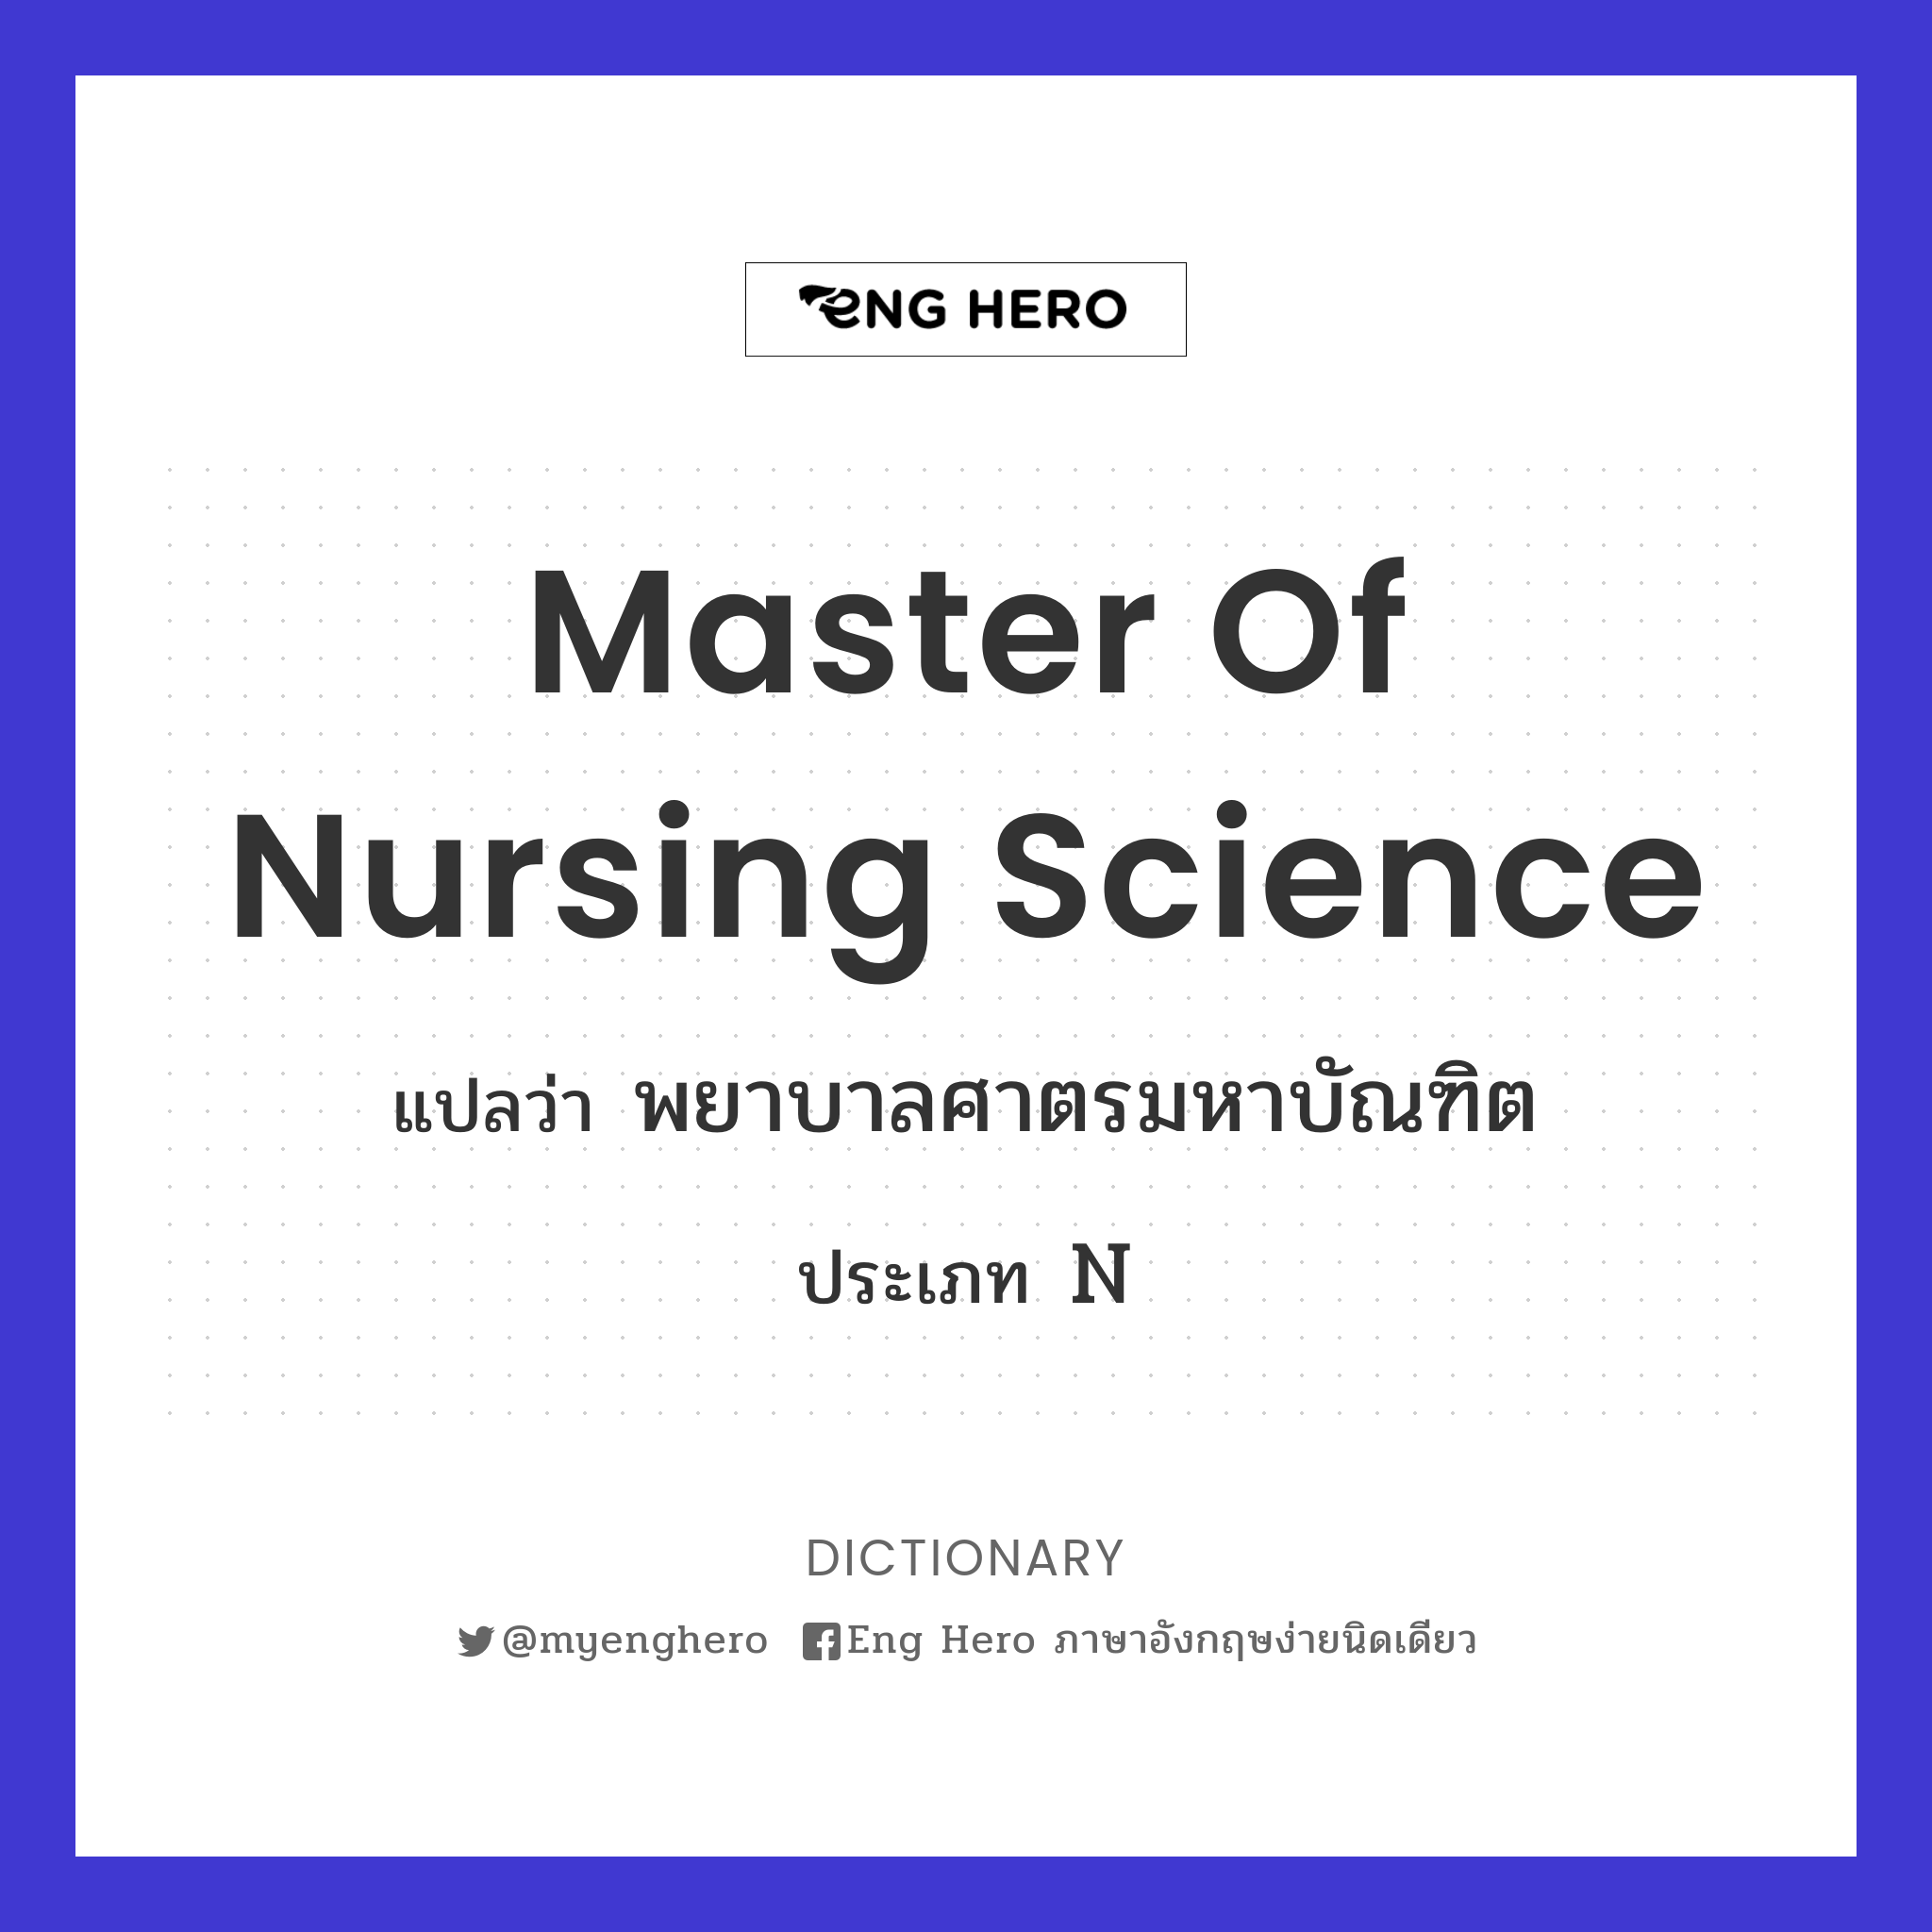 Master of Nursing Science